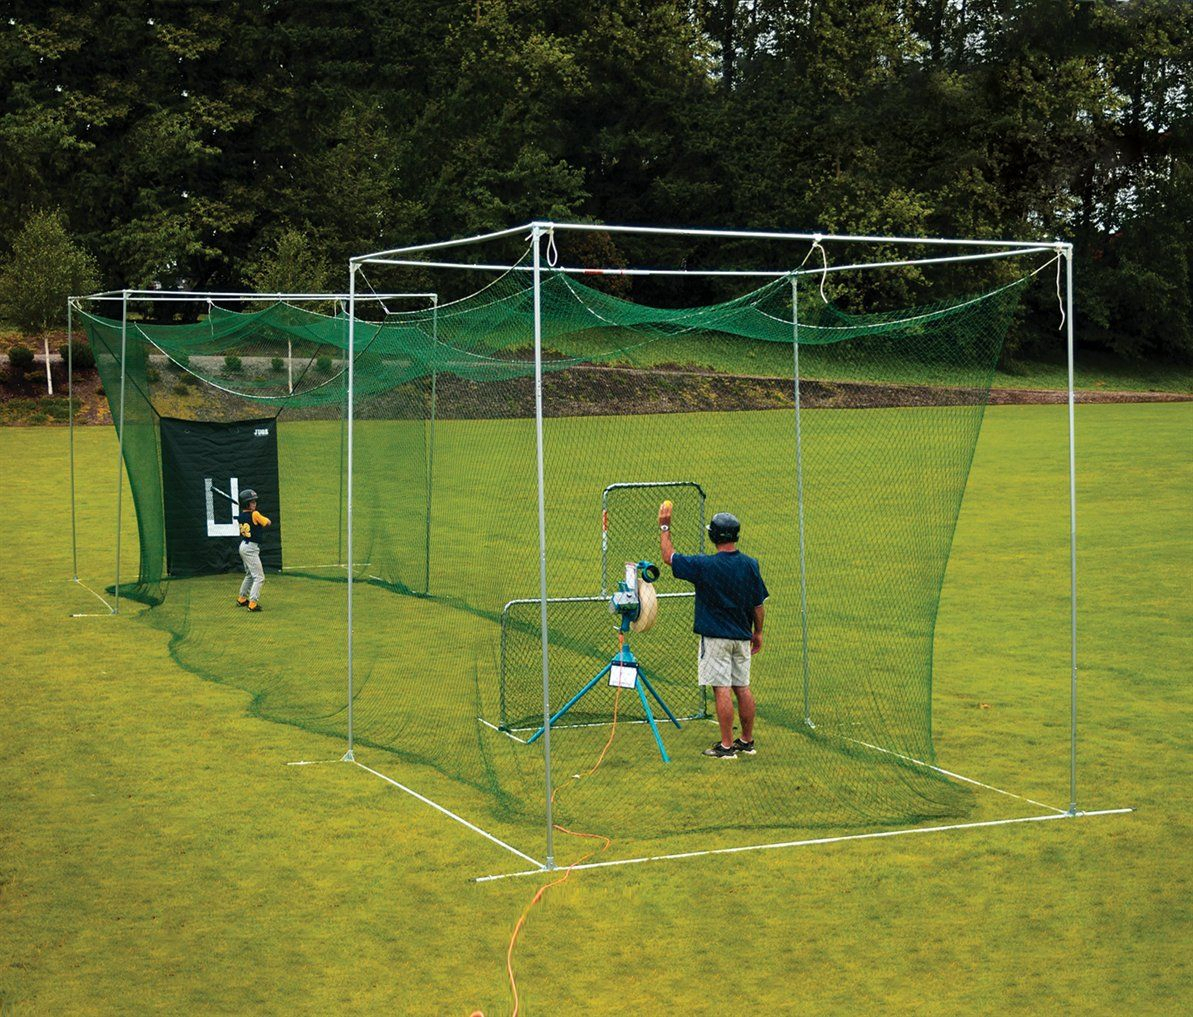 20.backyard batting cages ideas outside space backyard baseball via SIMPHOME.COM